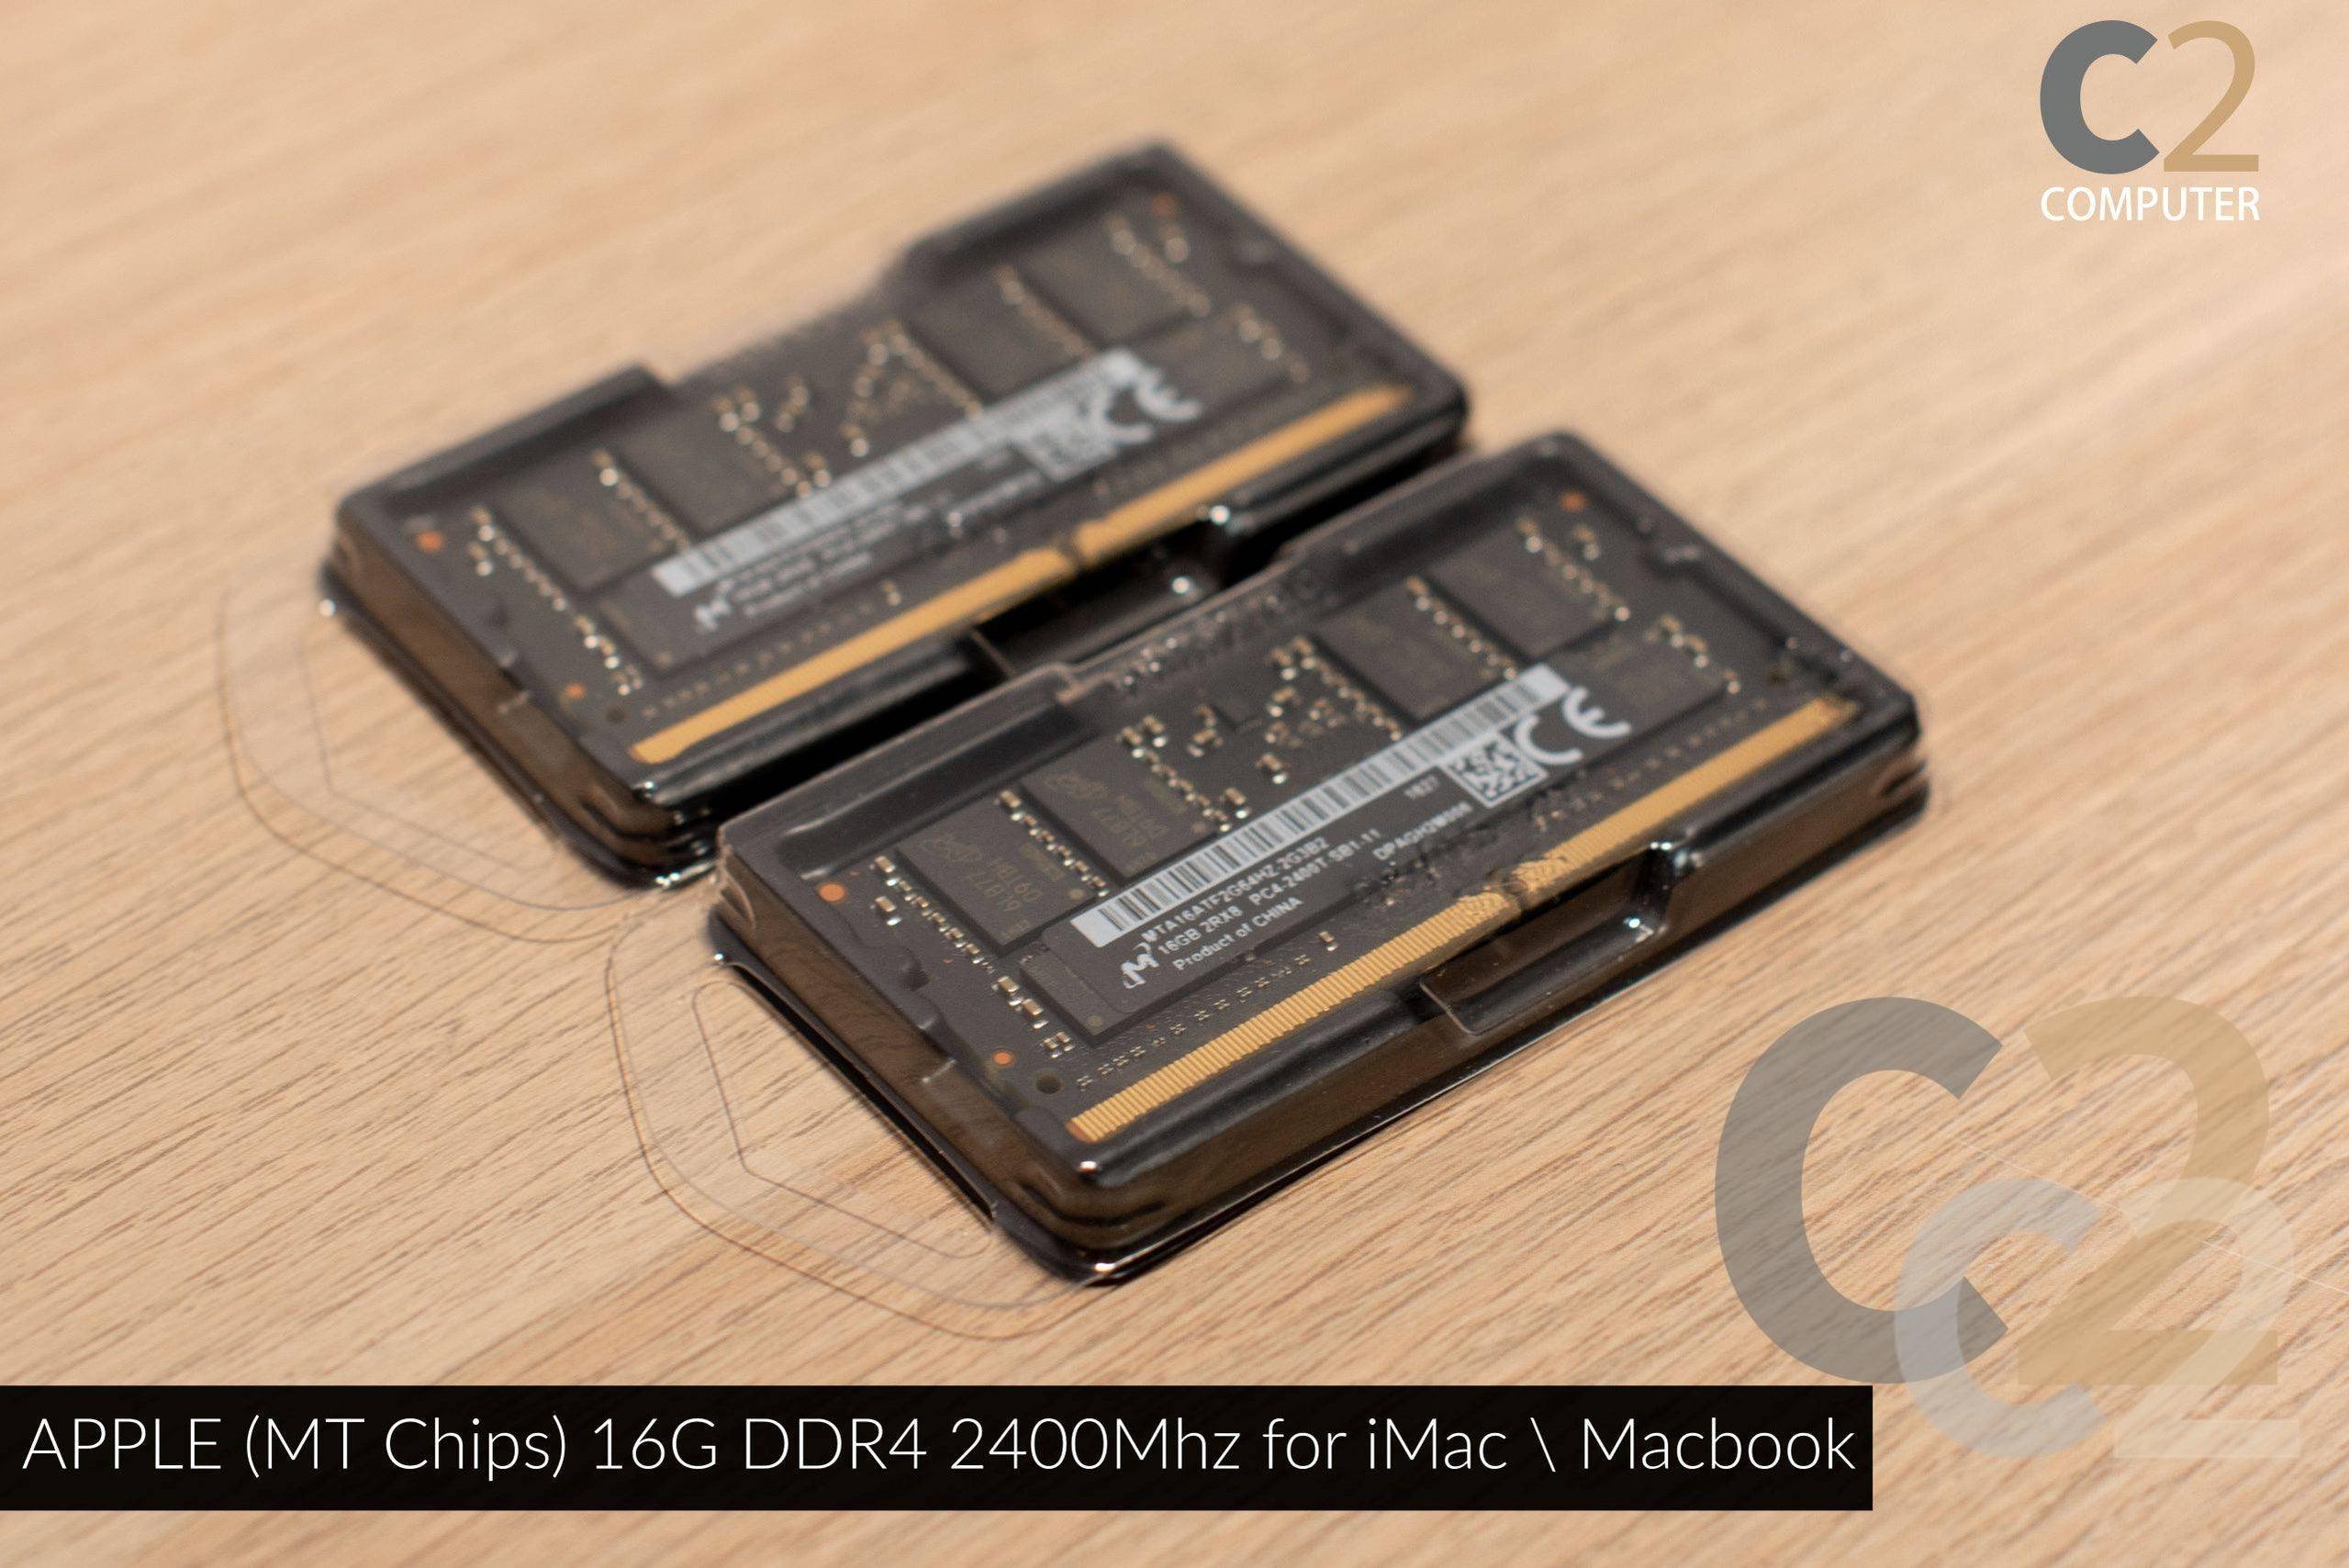 (特價一條) APPLE (MT Chips) 16G DDR4 2400Mhz for iMac Macbook 95%NEW - C2 Computer